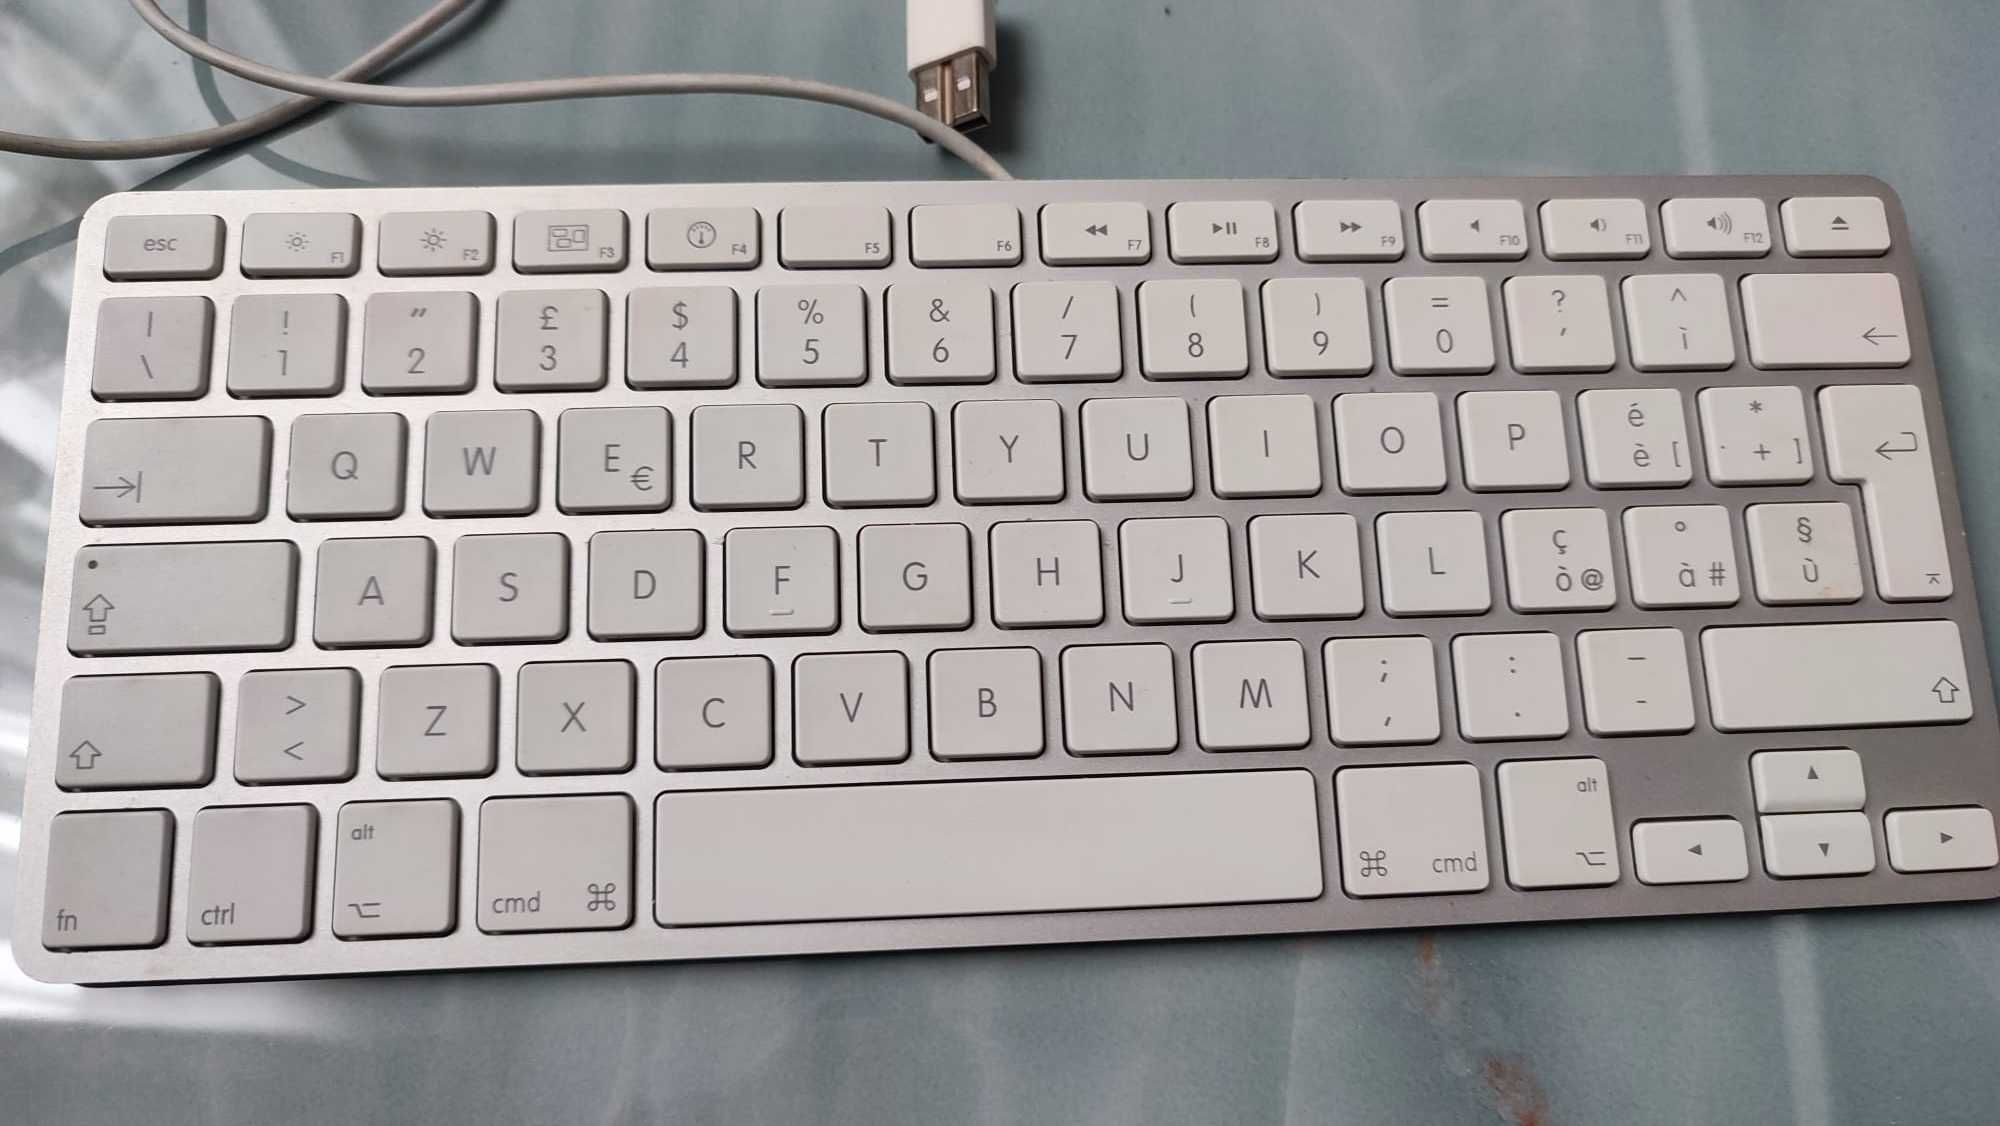 Tastatura Apple USB